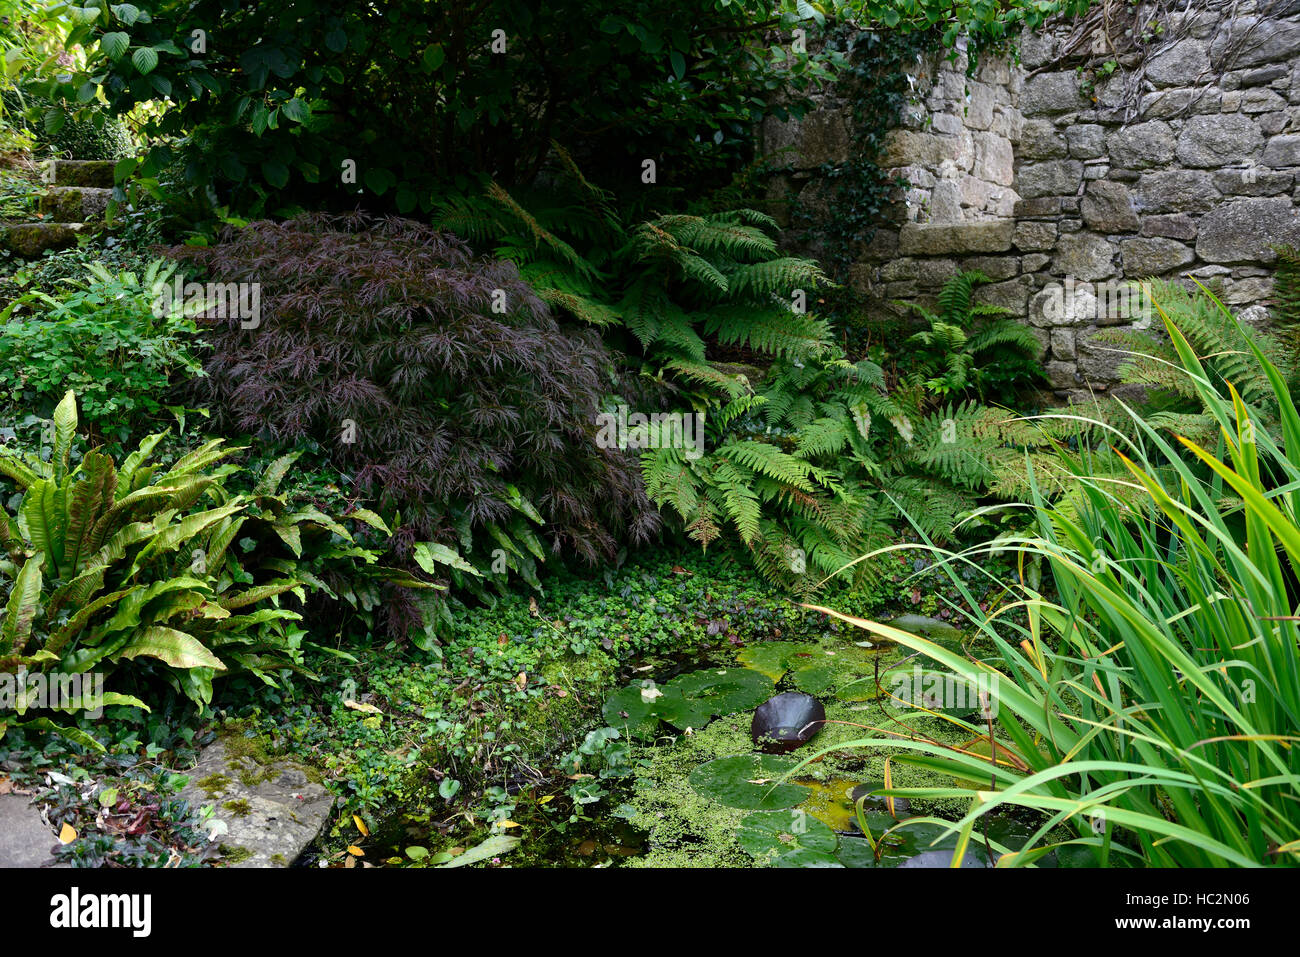 Acer Palmatum Dryopteris Gartenteich Schatten schattige schattierten Bereich Garten Standortsituation Aspekt gegenüber schwierigen RM Floral Stockfoto